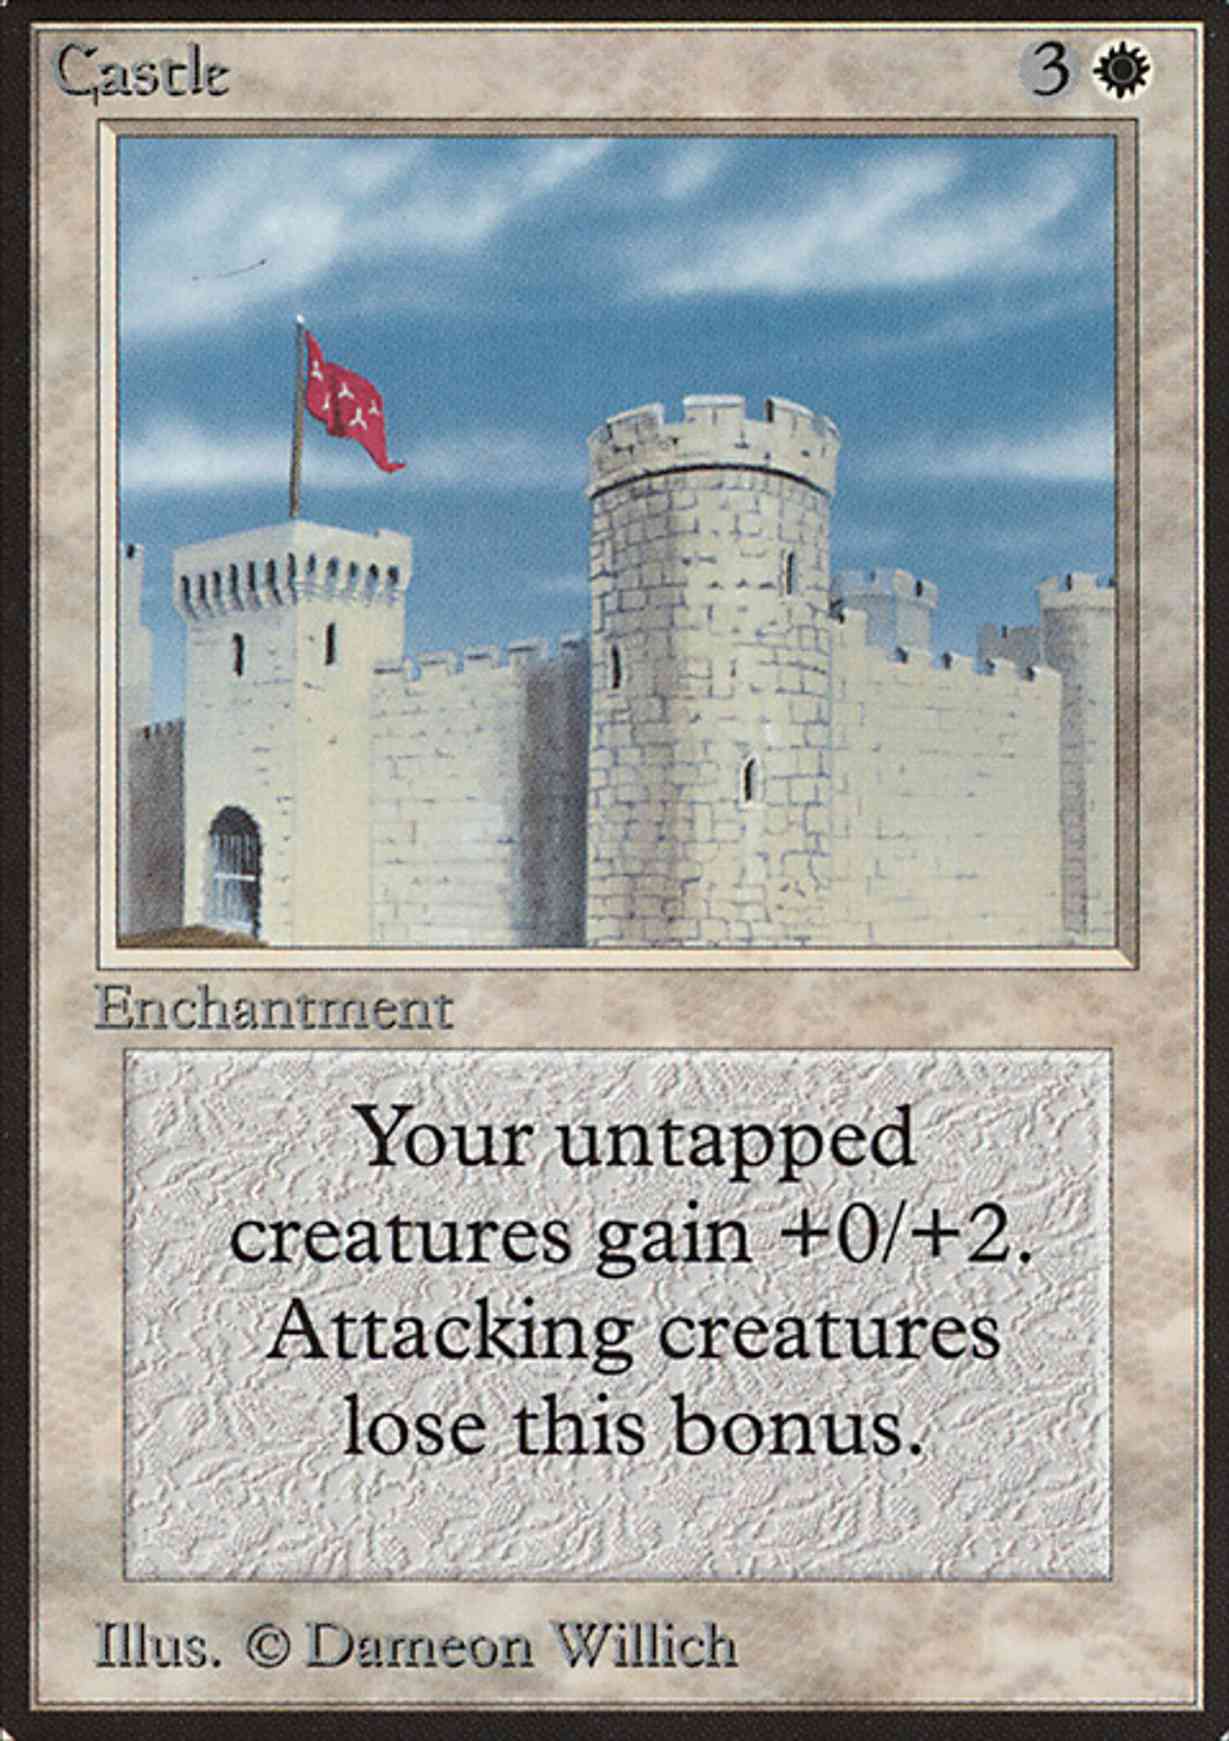 Castle magic card front